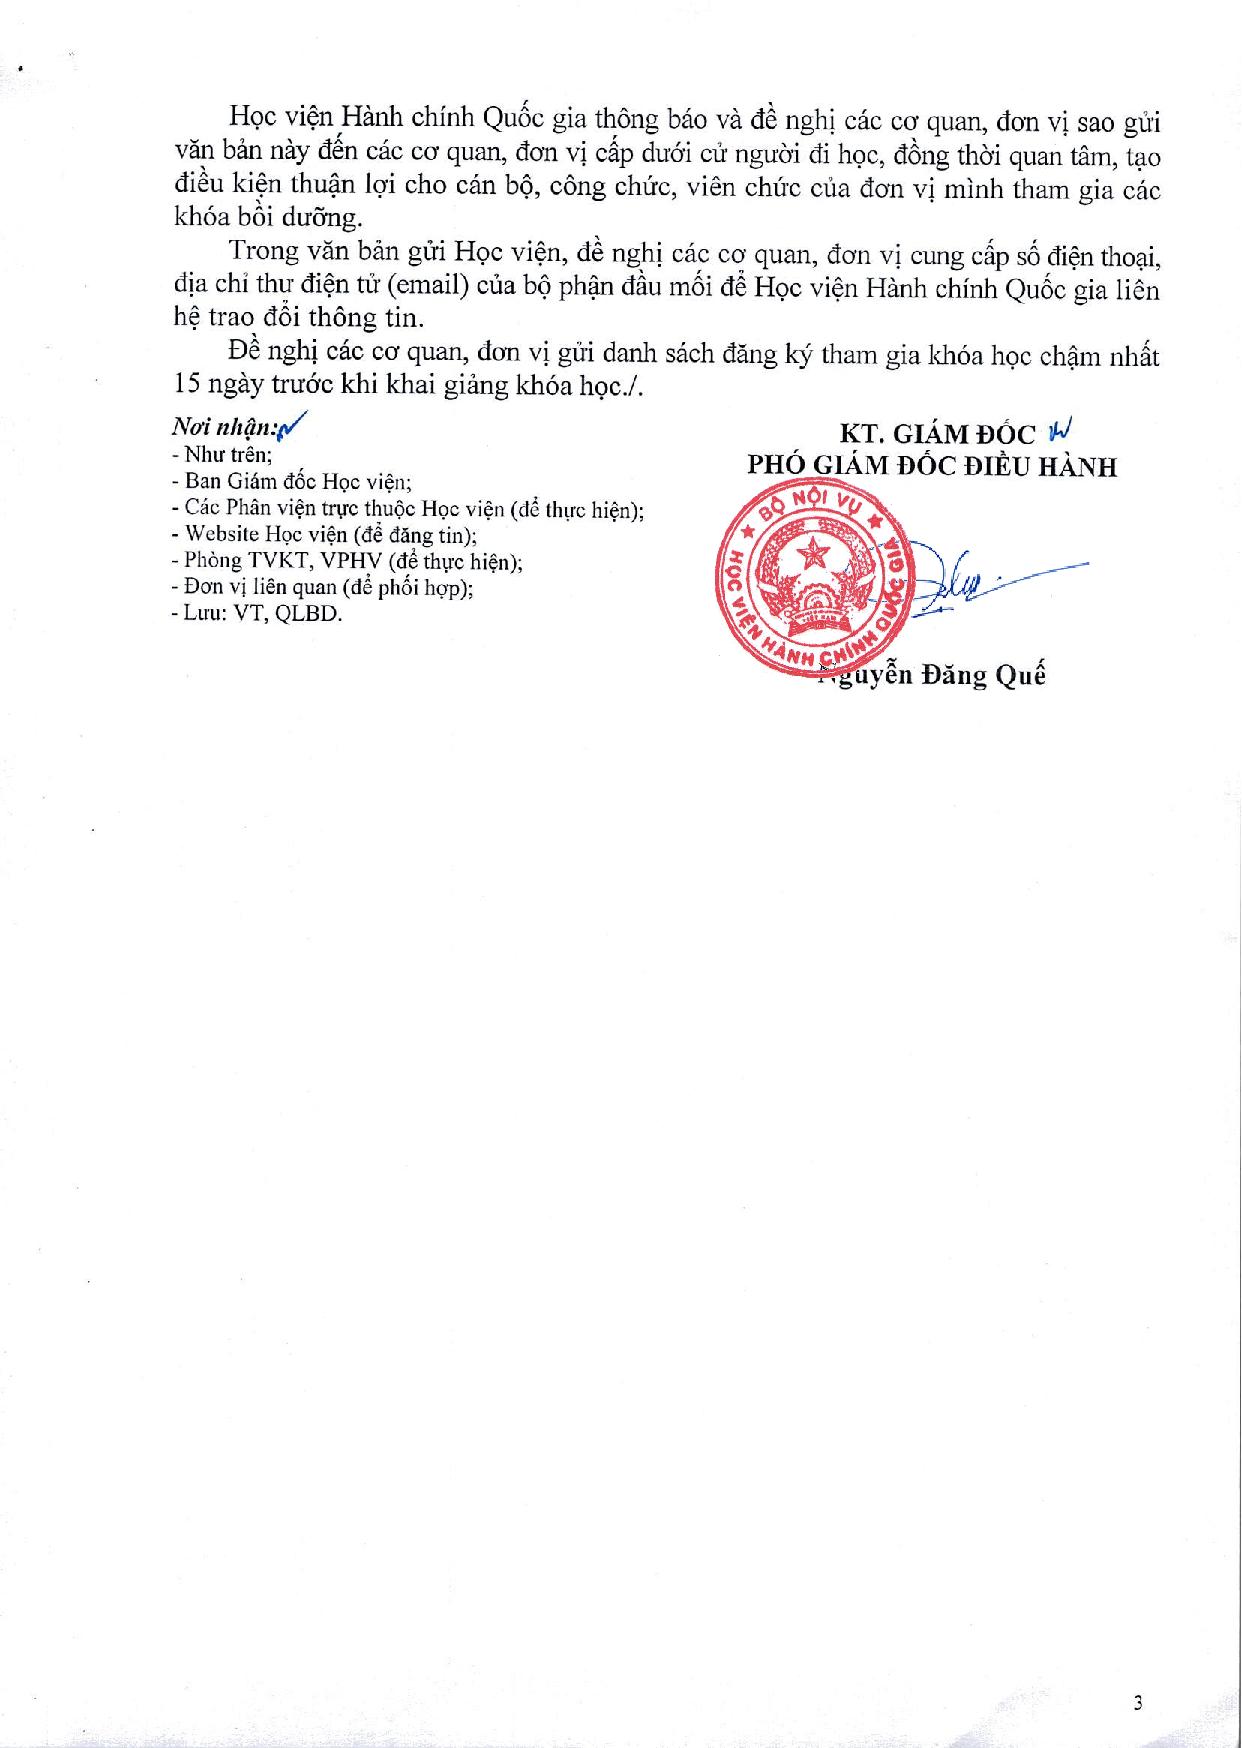 cv chieu sinh CV,CVC nam 2022-0001-0001-page-003